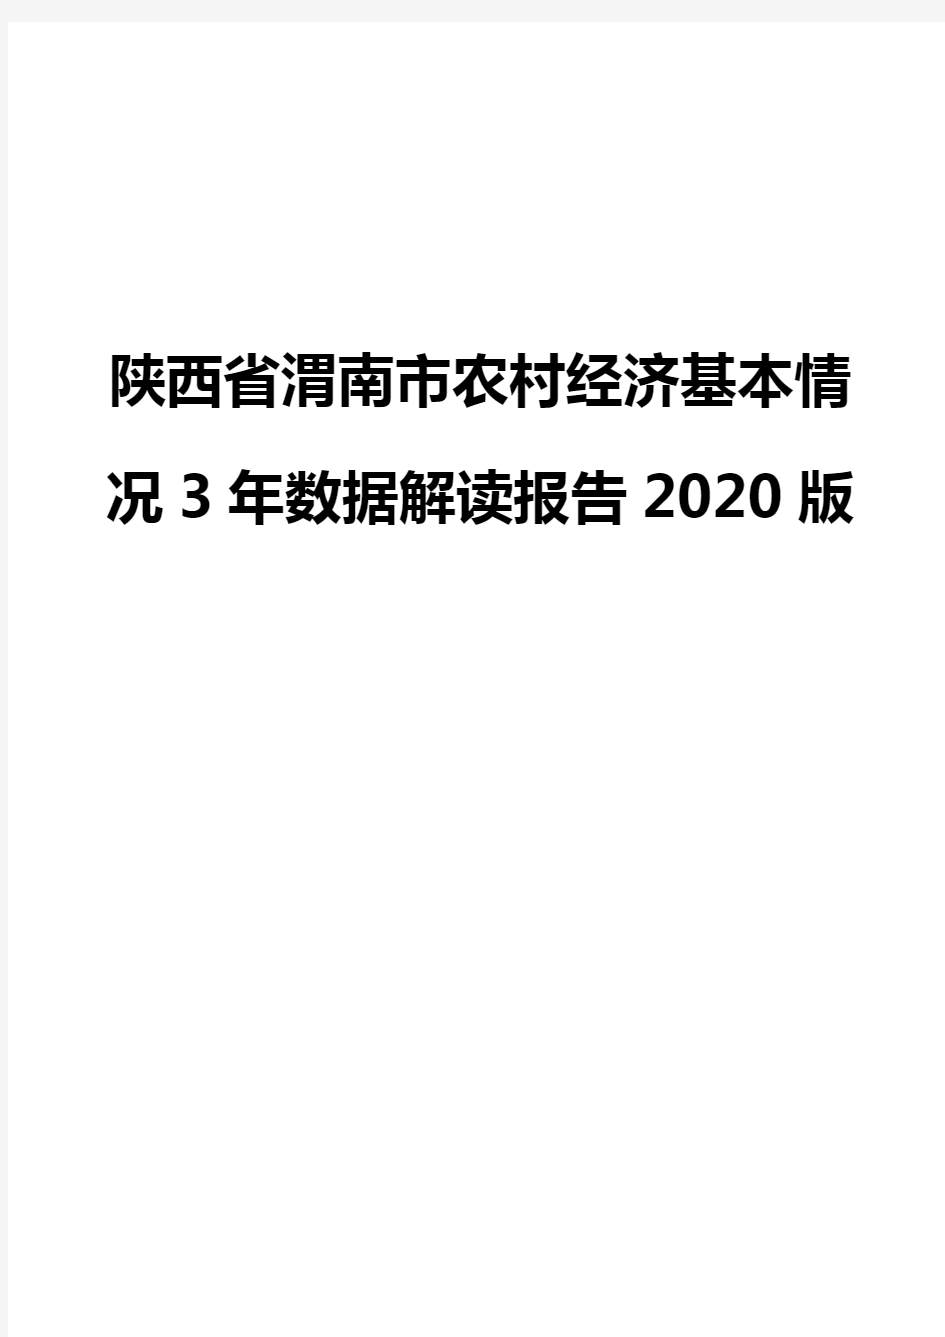 陕西省渭南市农村经济基本情况3年数据解读报告2020版